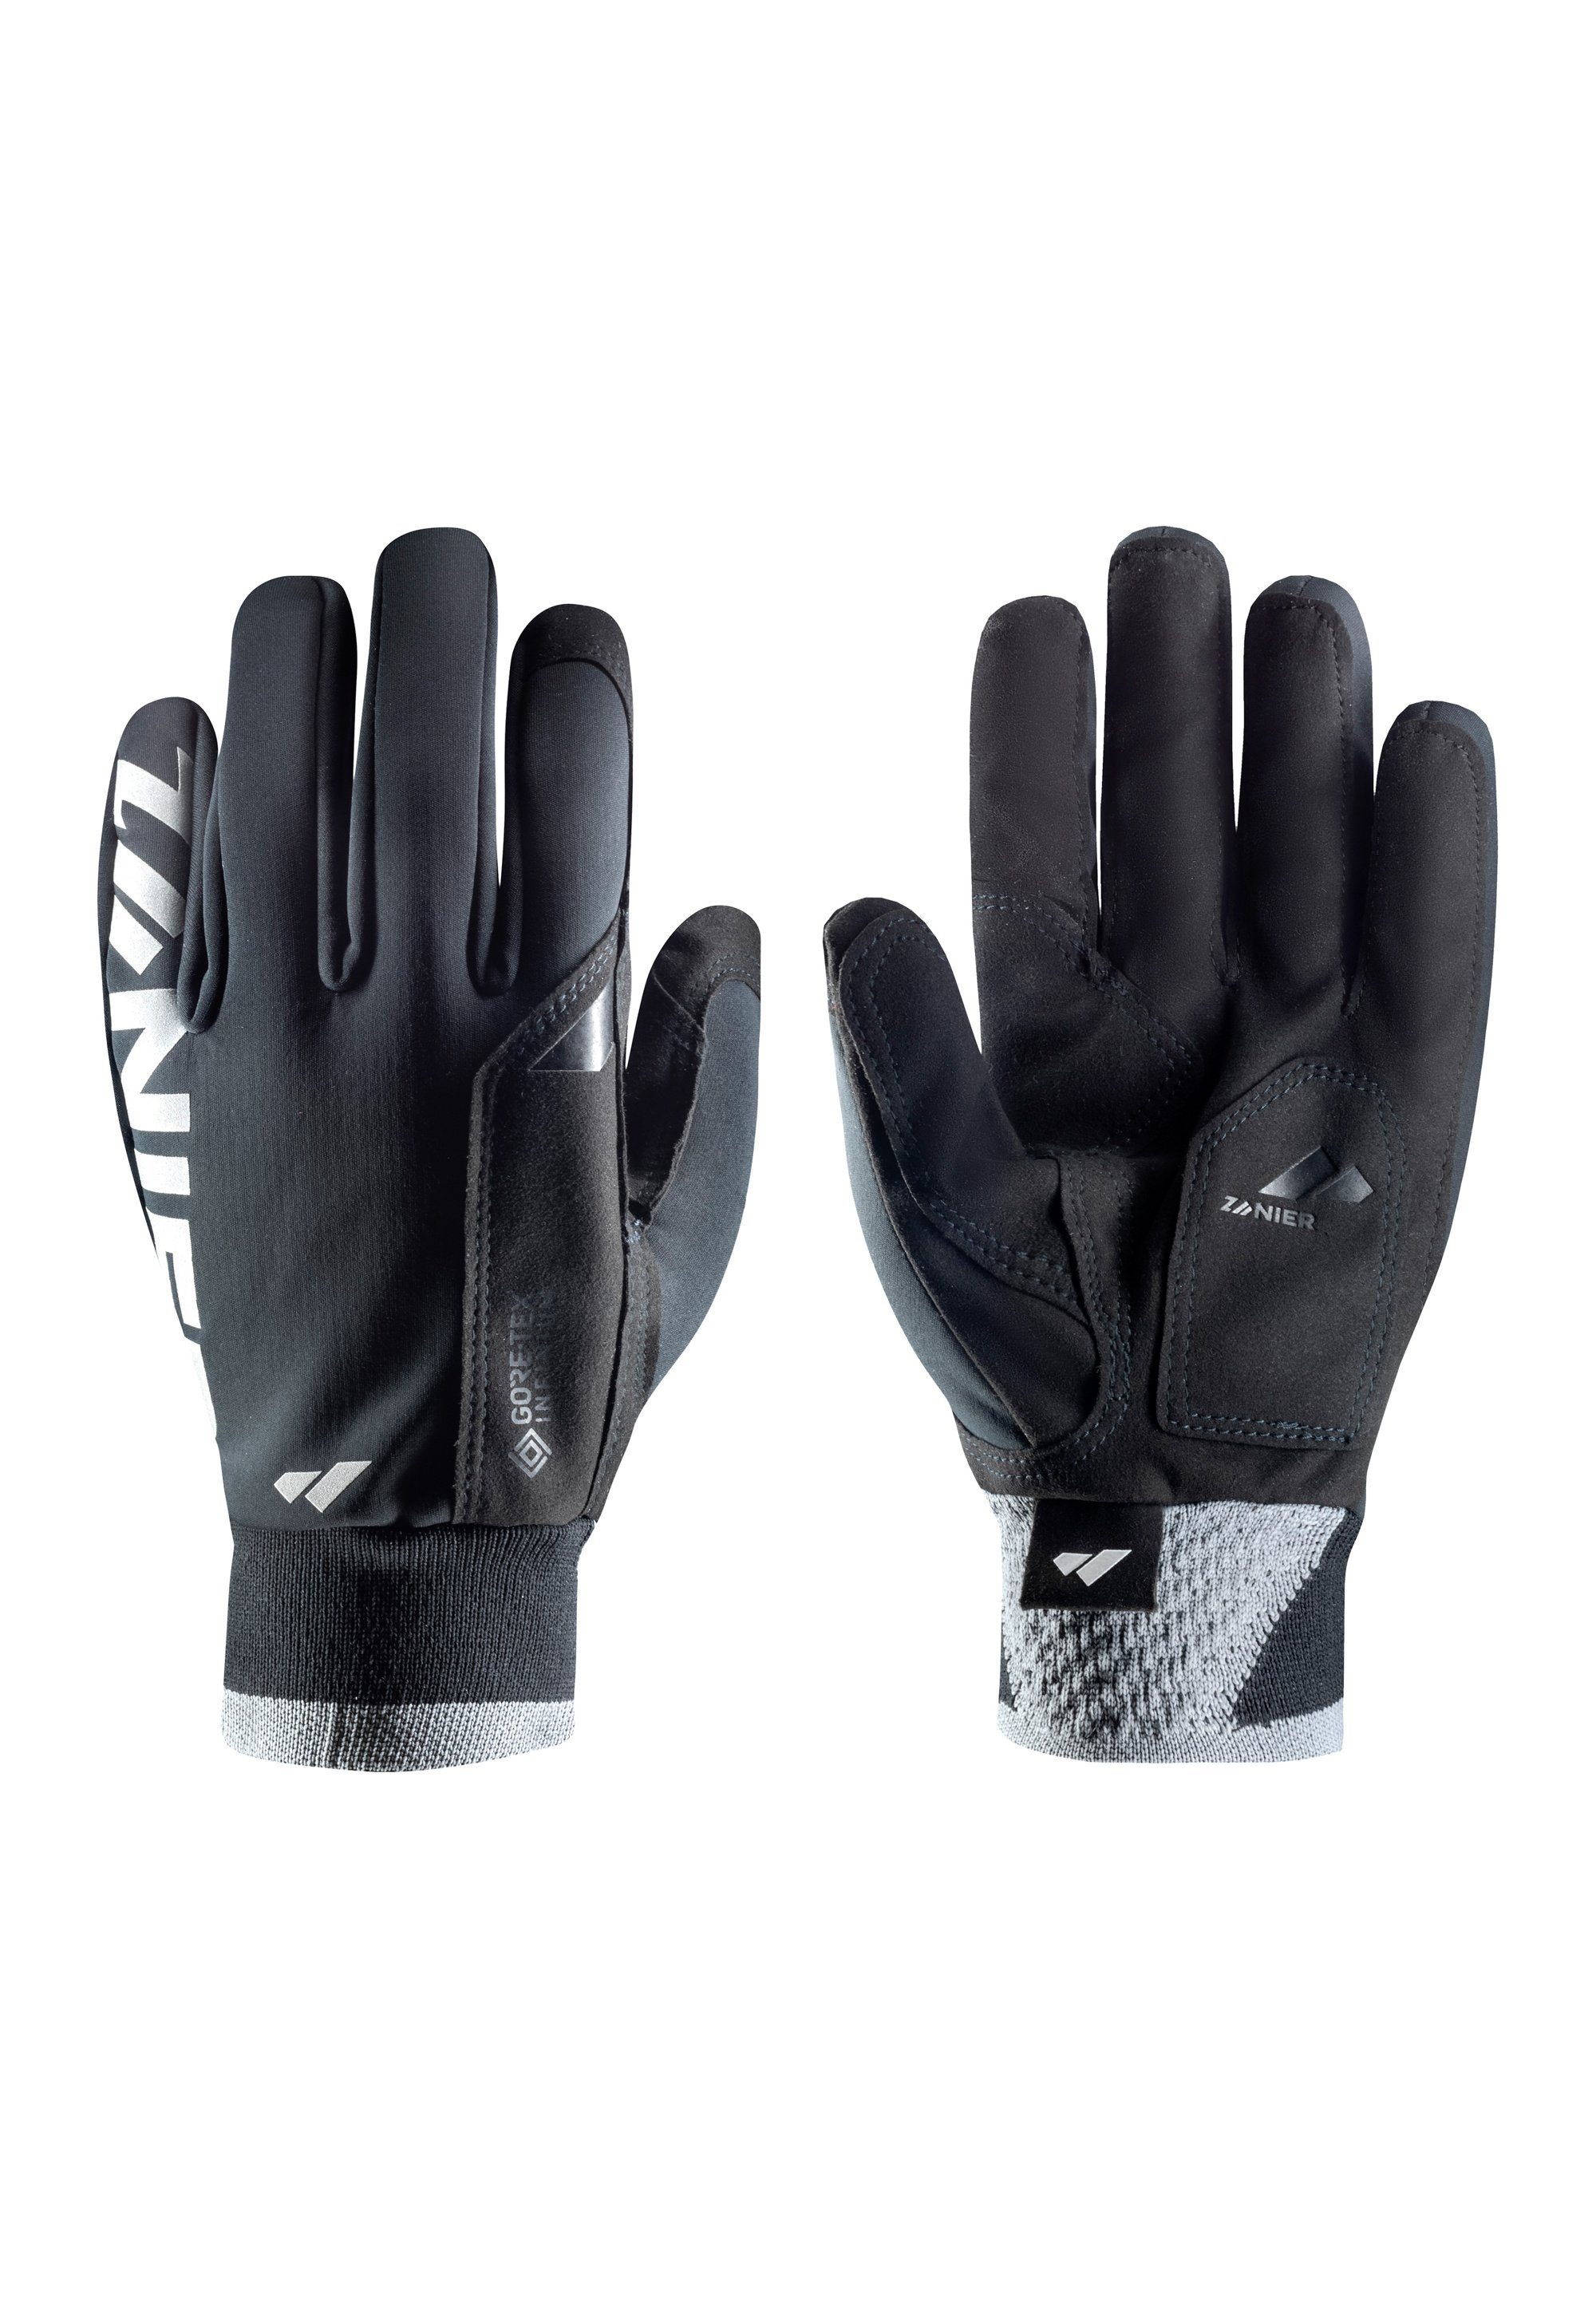 Zanier Multisporthandschuhe »XC PRO« We focus on gloves online kaufen | OTTO